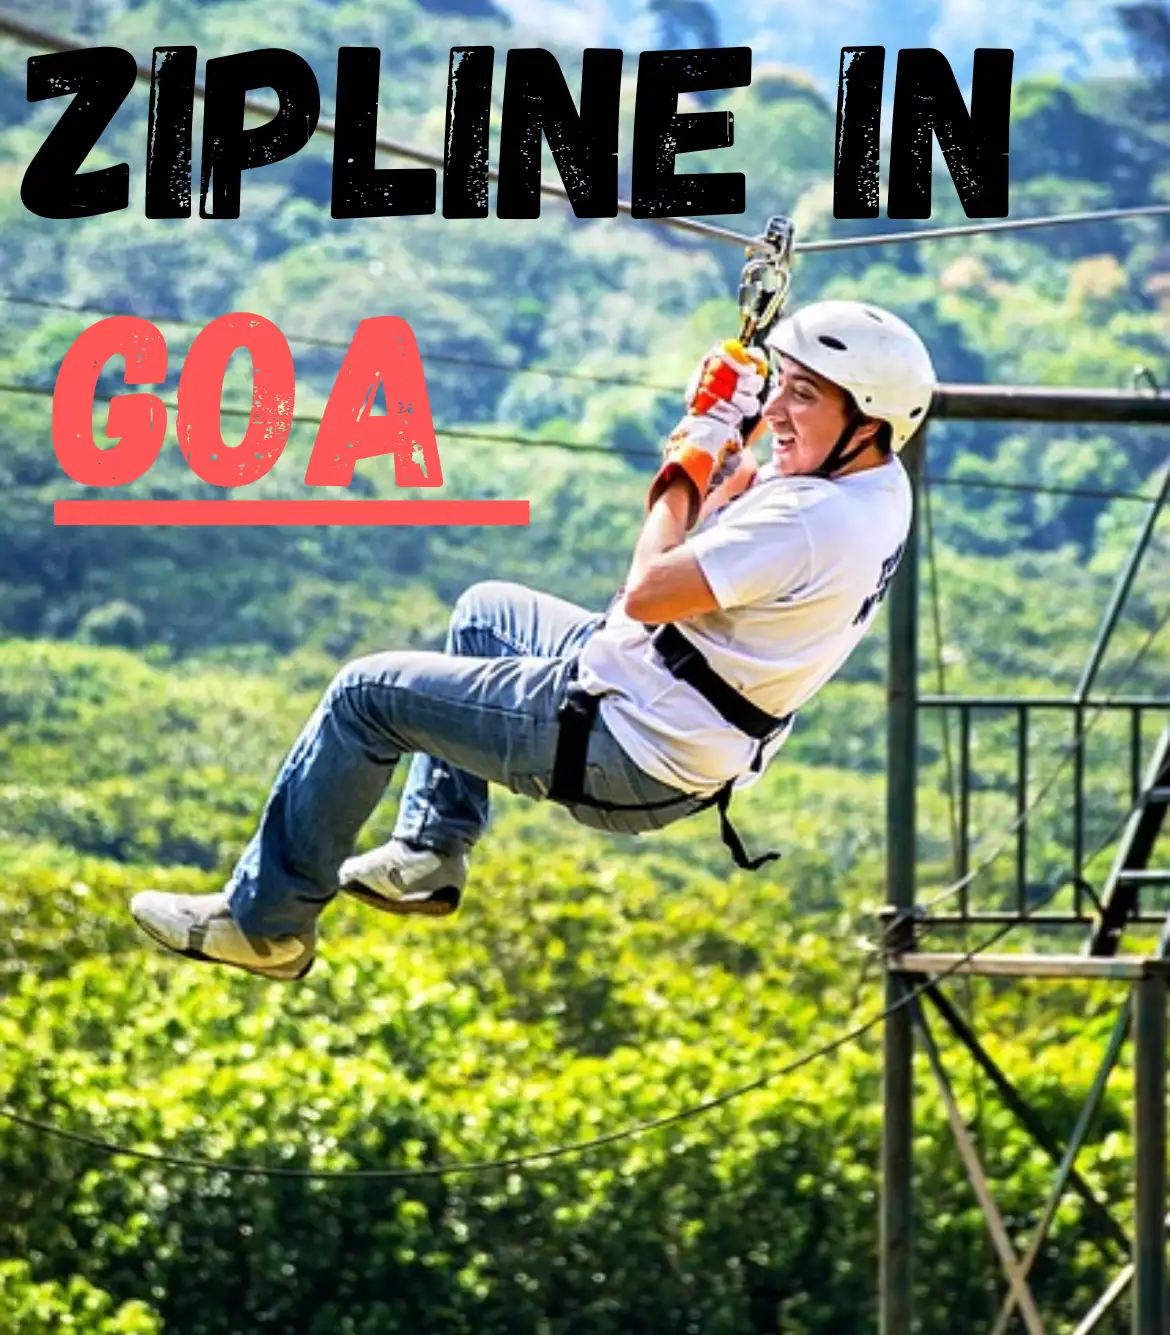 Zipline in Goa